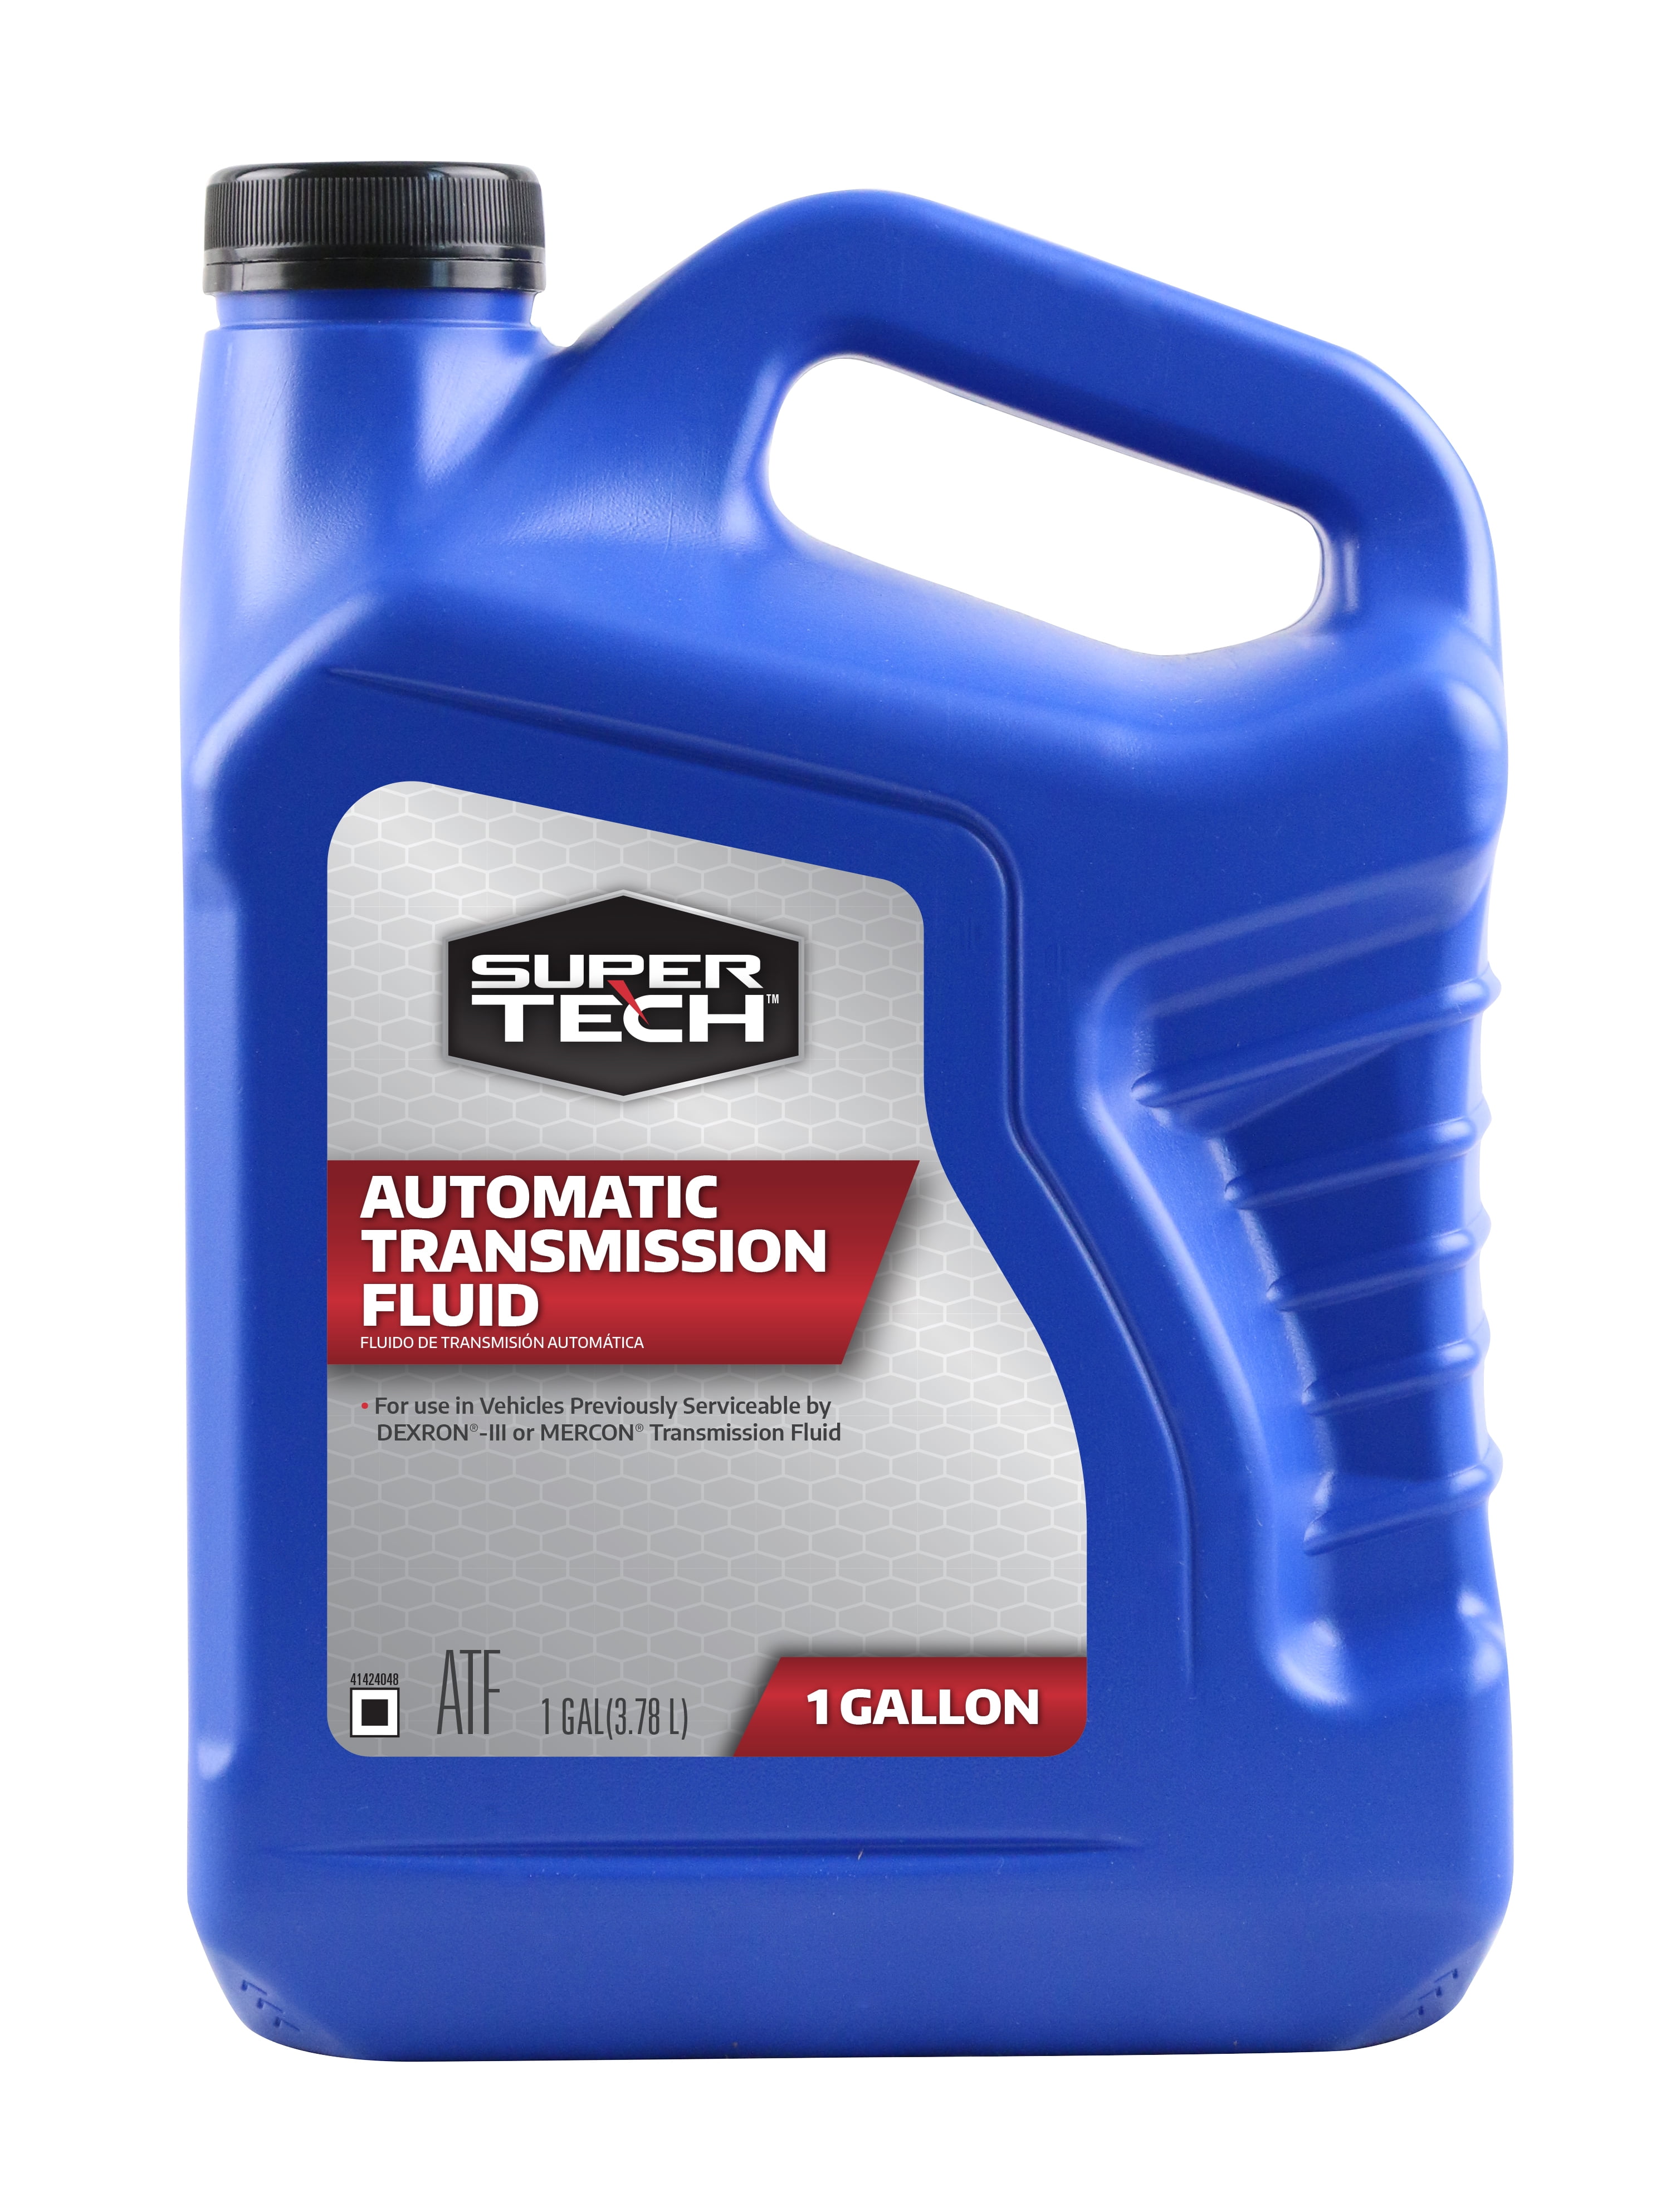 Super Tech Automatic Transmission Fluid, 1 Gallon Bottle - Walmart.com